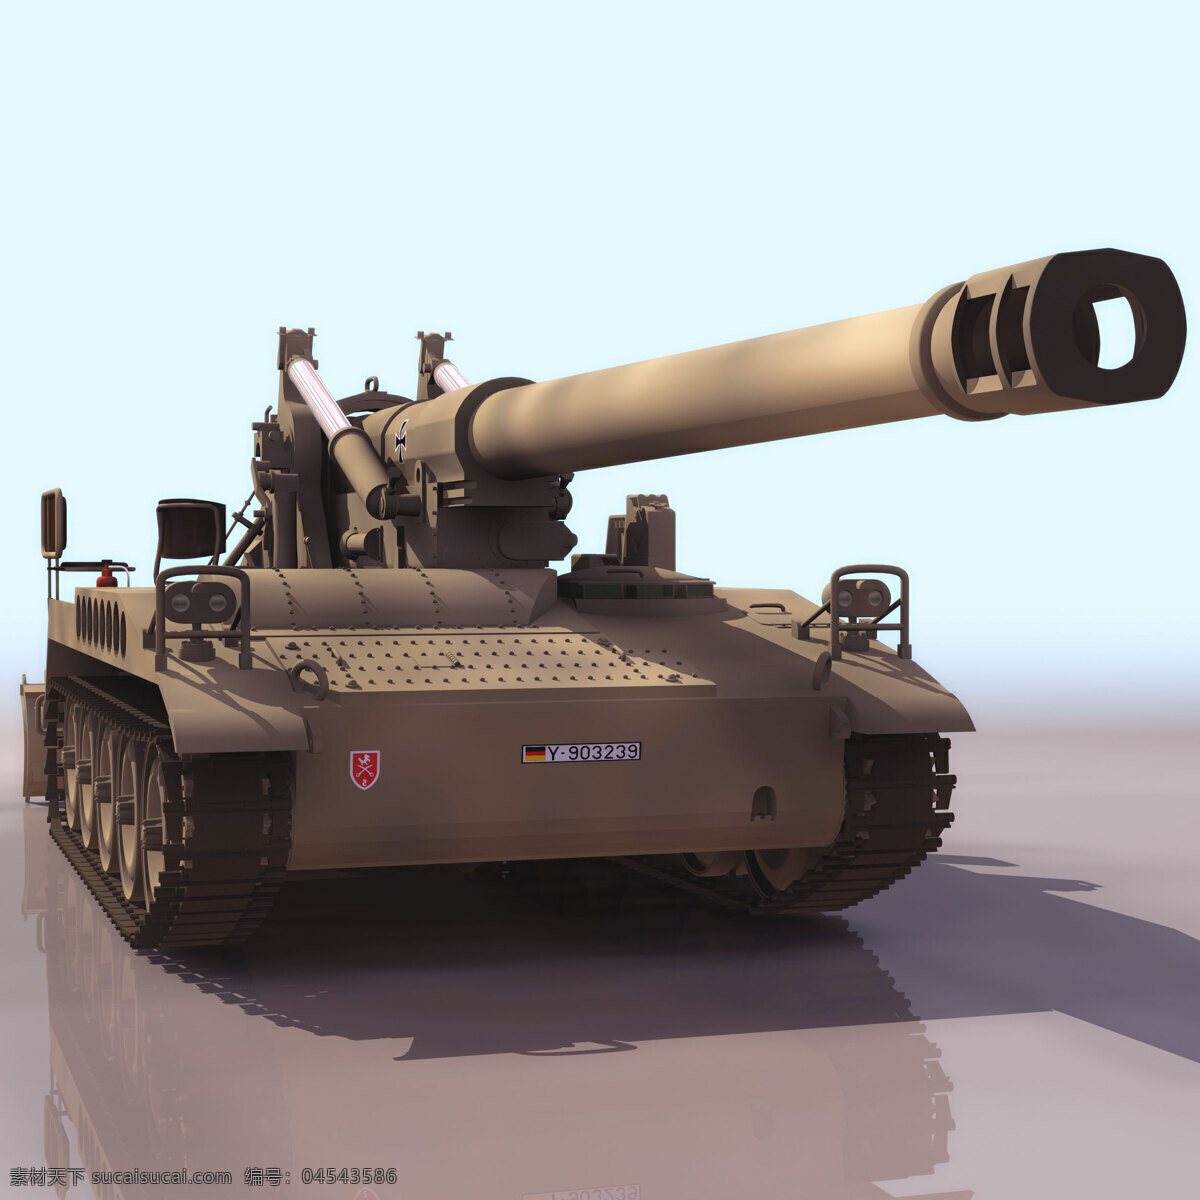 坦克 模型 m110a2 军事模型 坦克模型 陆军武器库 3d模型素材 其他3d模型